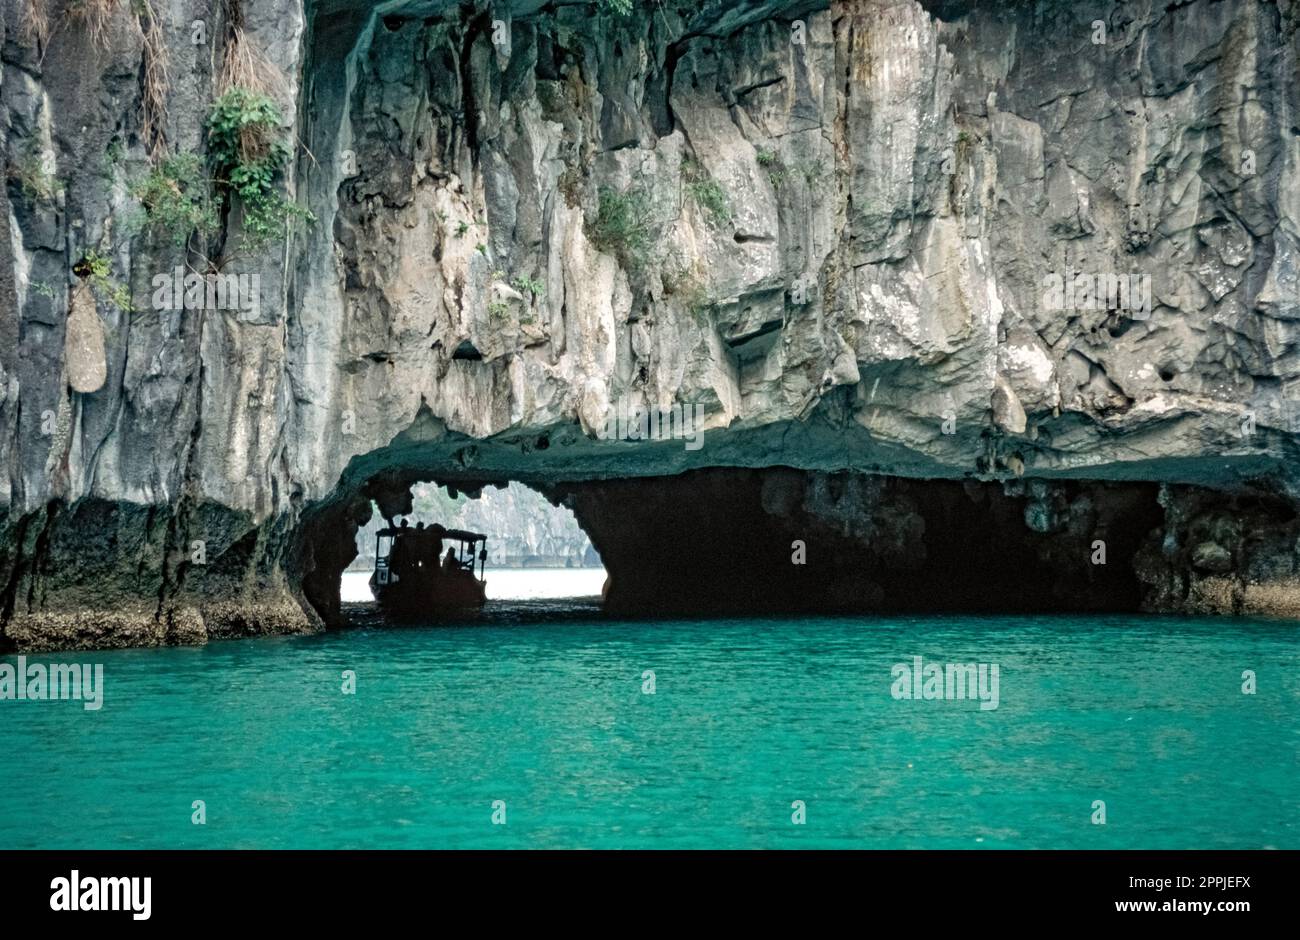 Gescannte Folie mit historischem Farbfoto der Küstenregion Vietnams in der Halong-Bucht im Chinesischen Meer Stockfoto